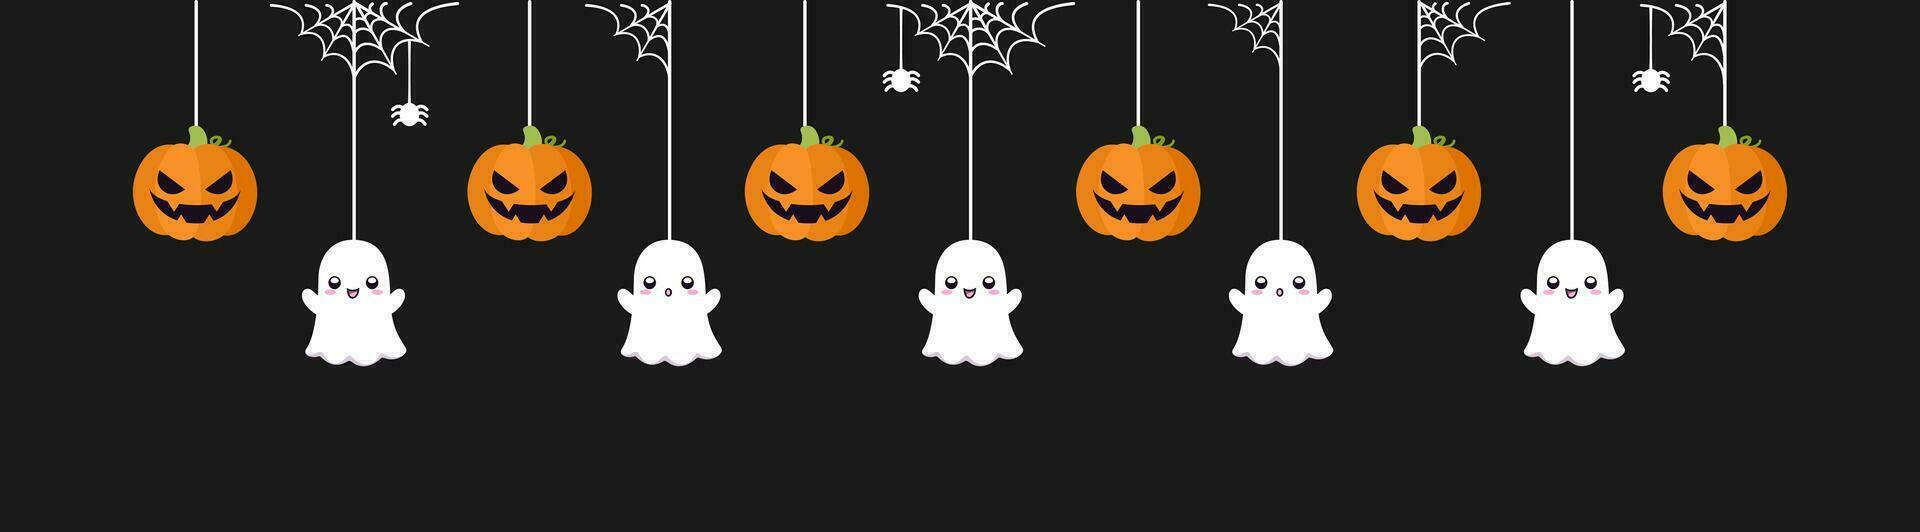 gelukkig halloween grens banier met geest en jack O lantaarn pompoenen. hangende spookachtig ornamenten decoratie vector illustratie, truc of traktatie partij uitnodiging